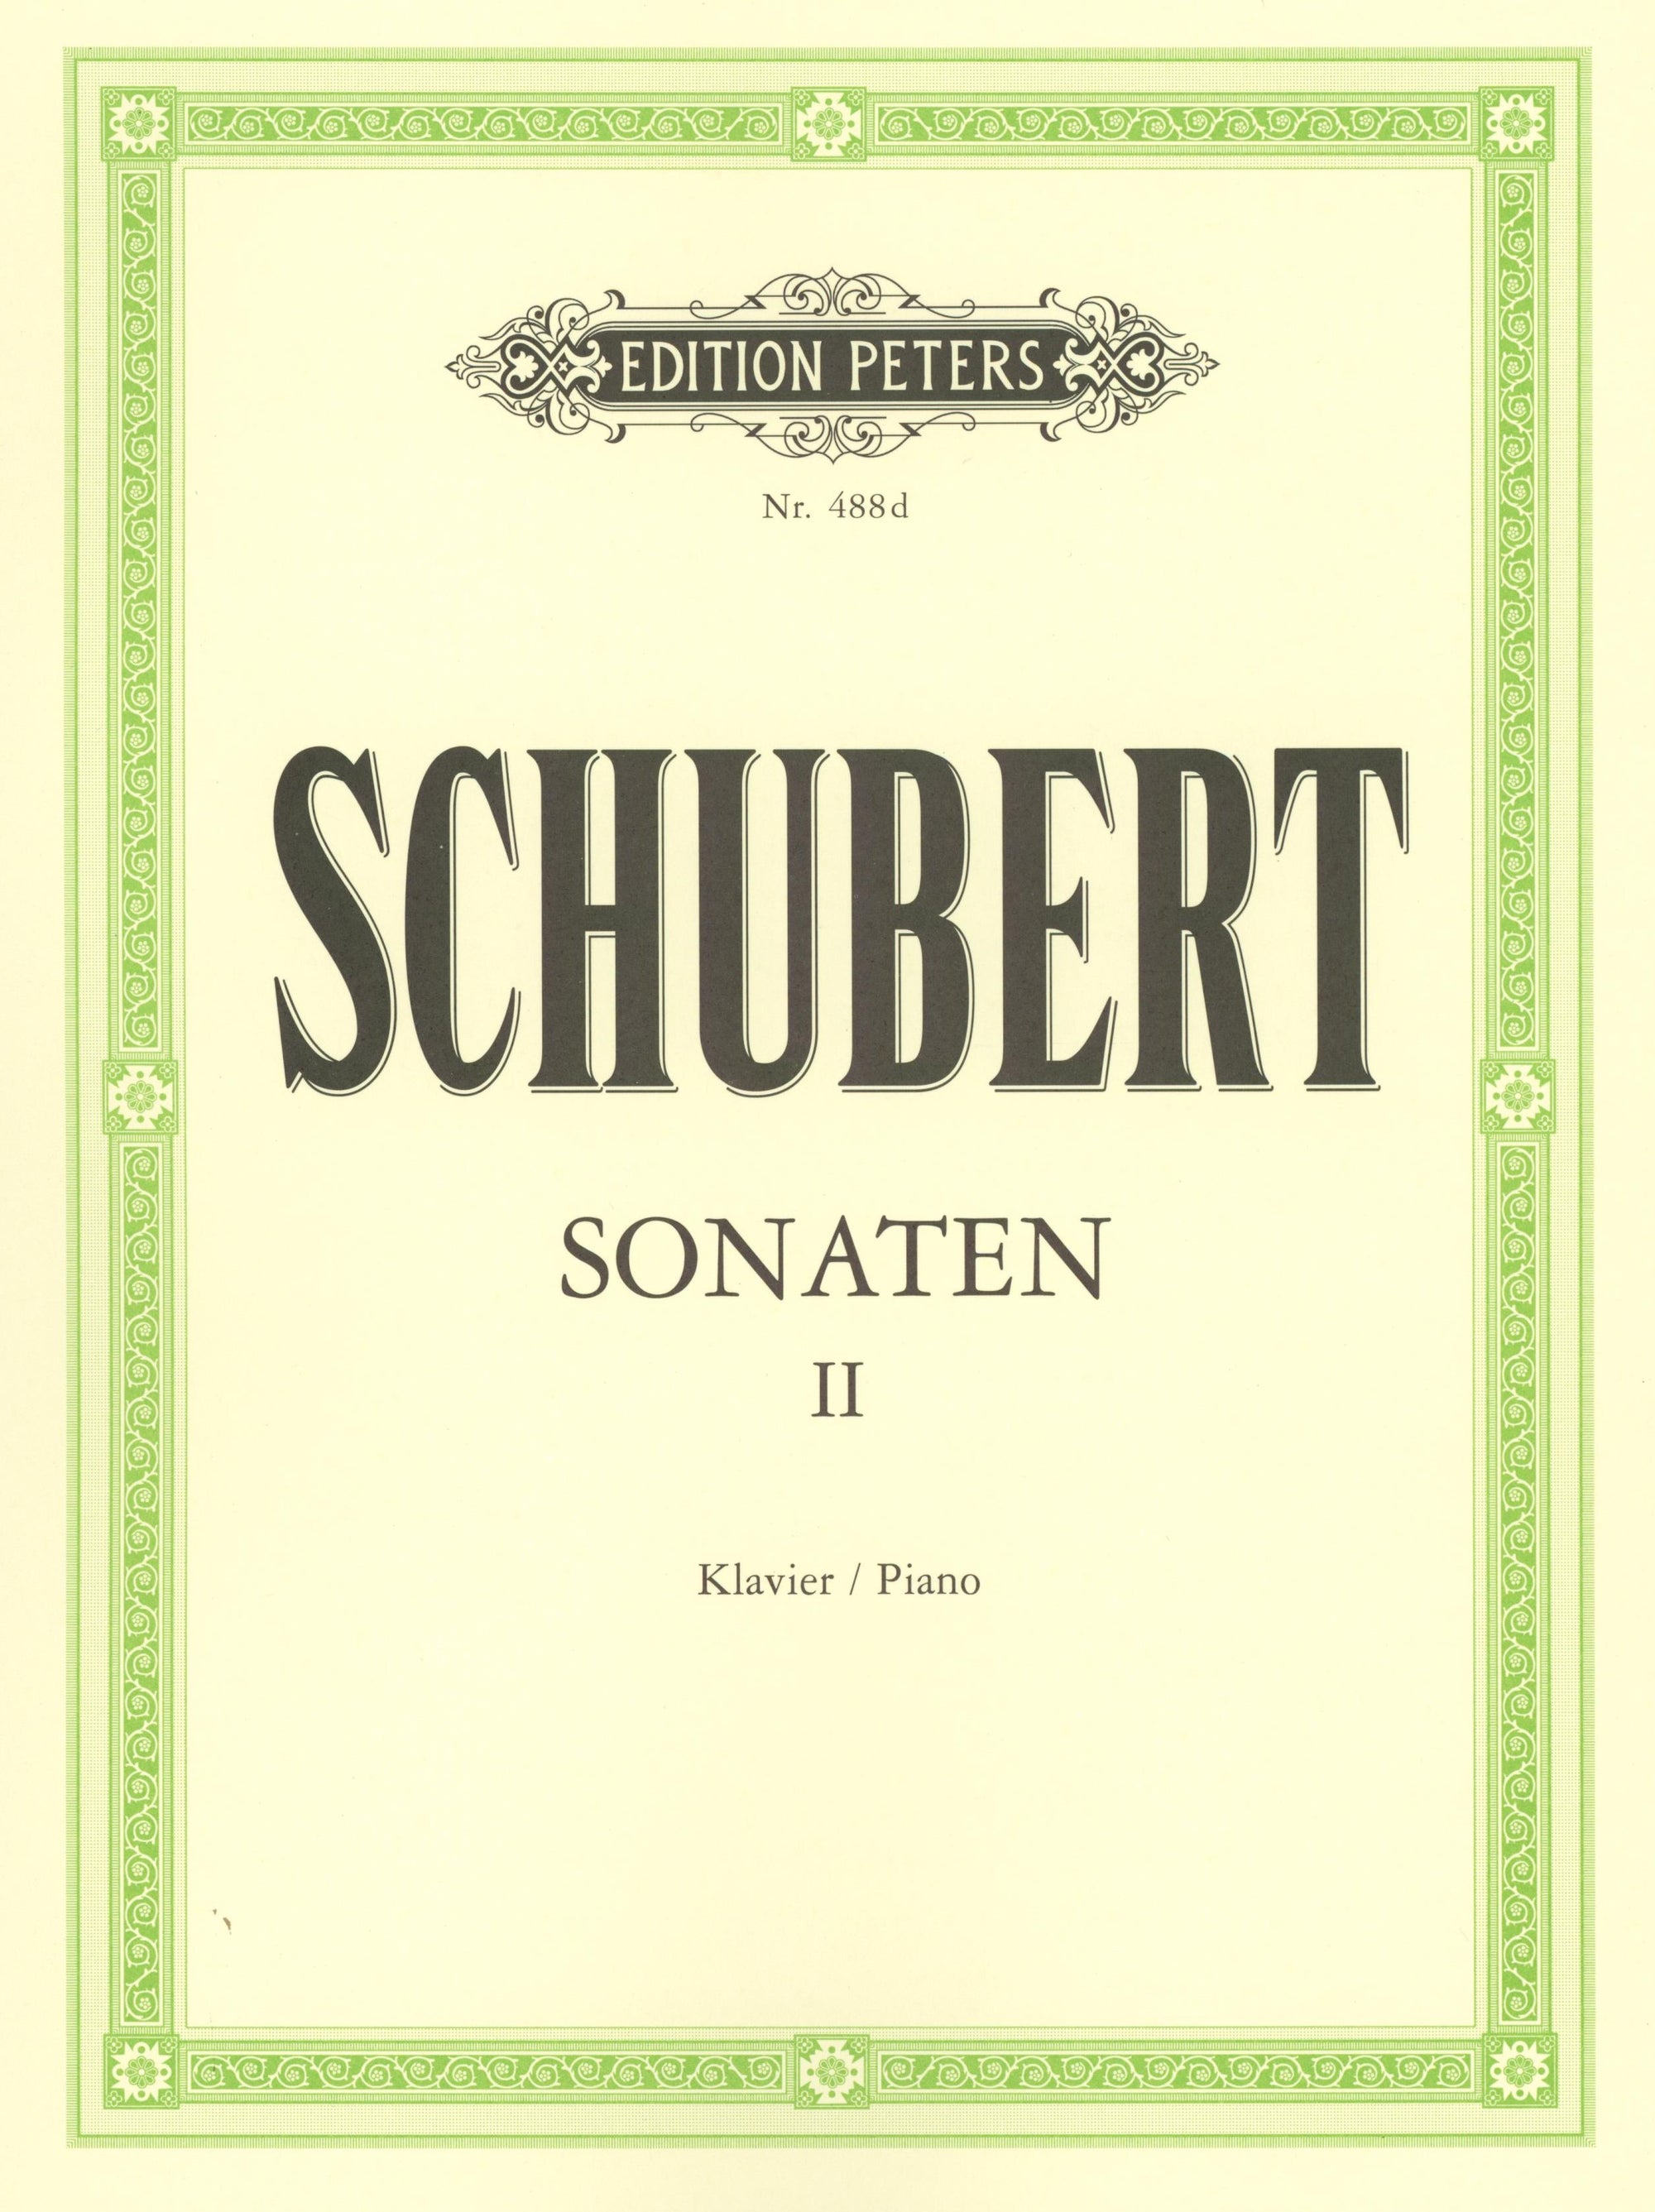 Schubert: Piano Sonatas - Volume 2